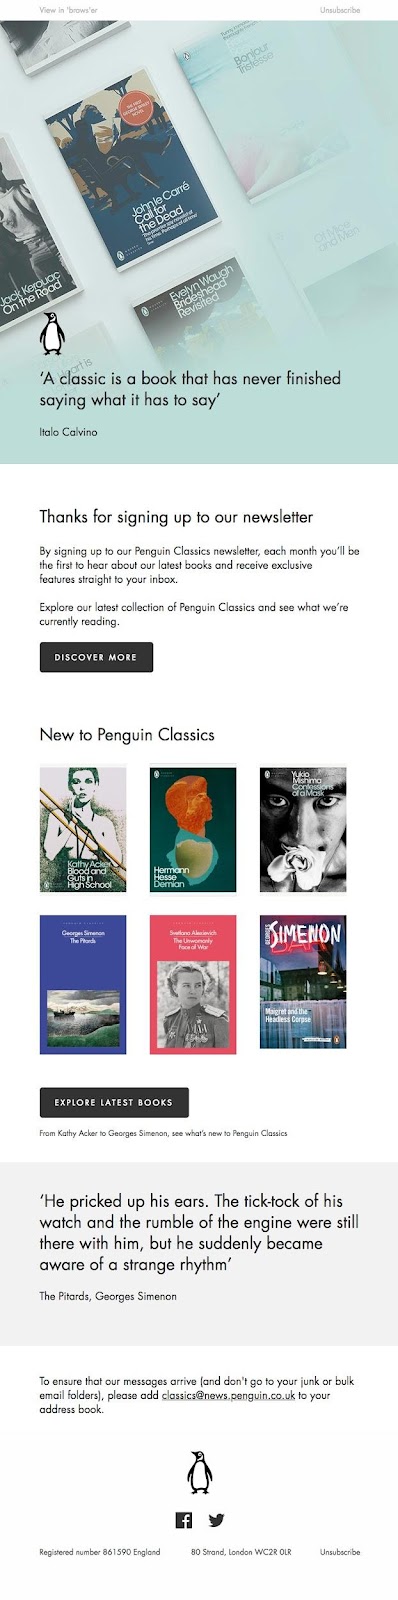 Penguin Classics example